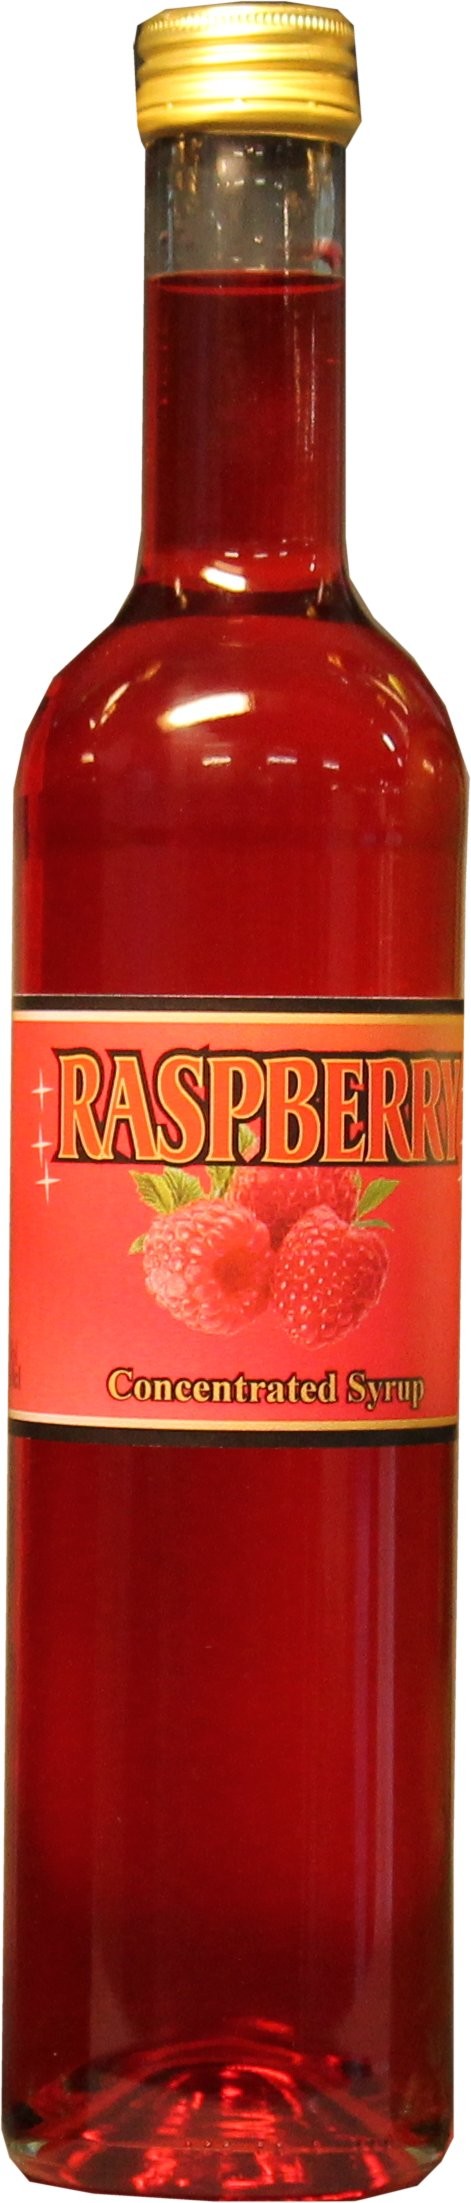 Raspberry syrup är en perfekt hallonsirap att blanda med dina hallondrinkar.